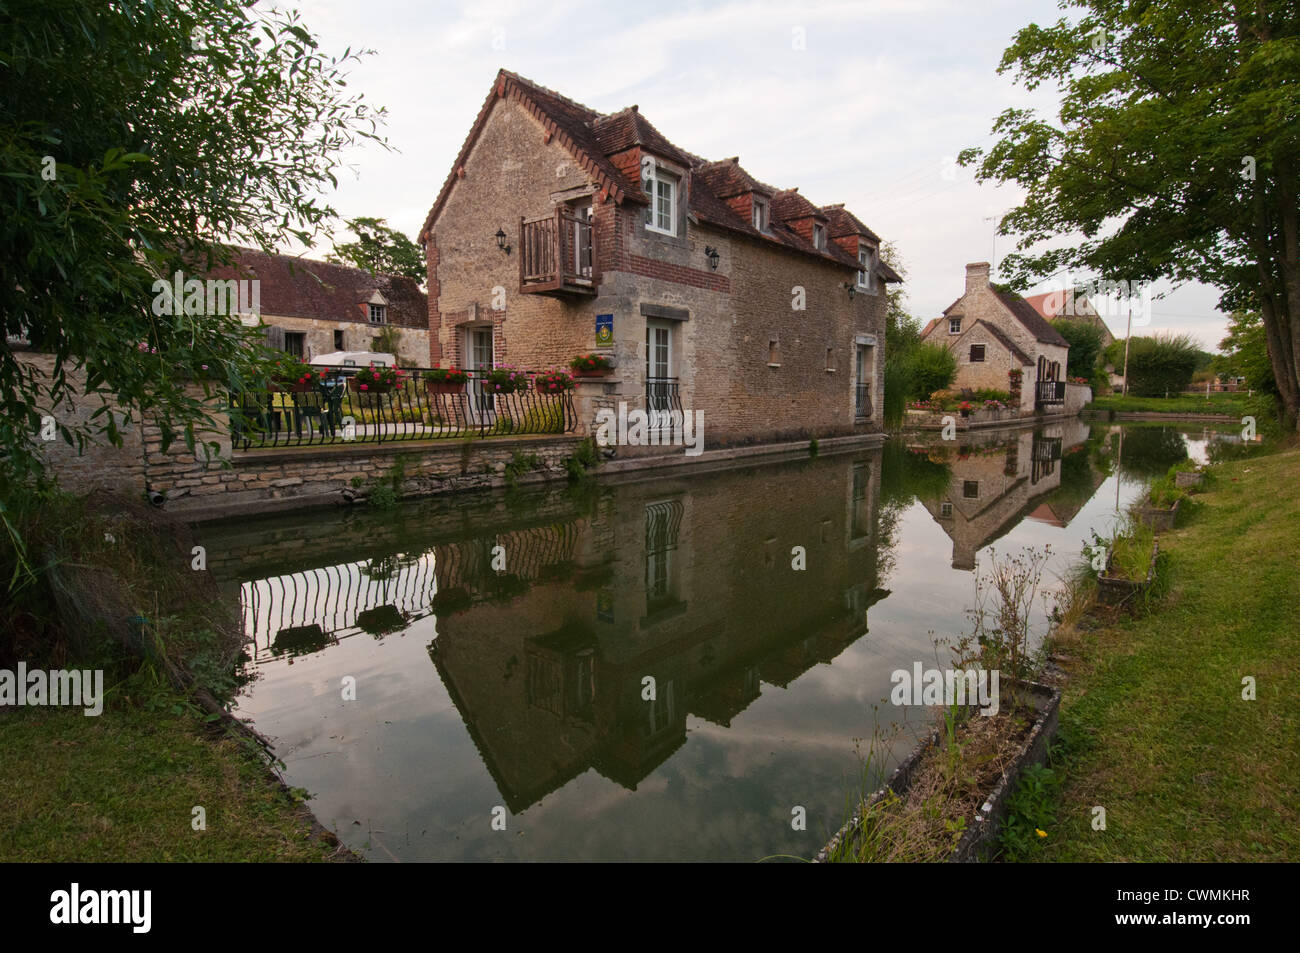 Normandy village of Neauphe-sur-Dive, Orne, Basse-Normandie, France. Stock Photo